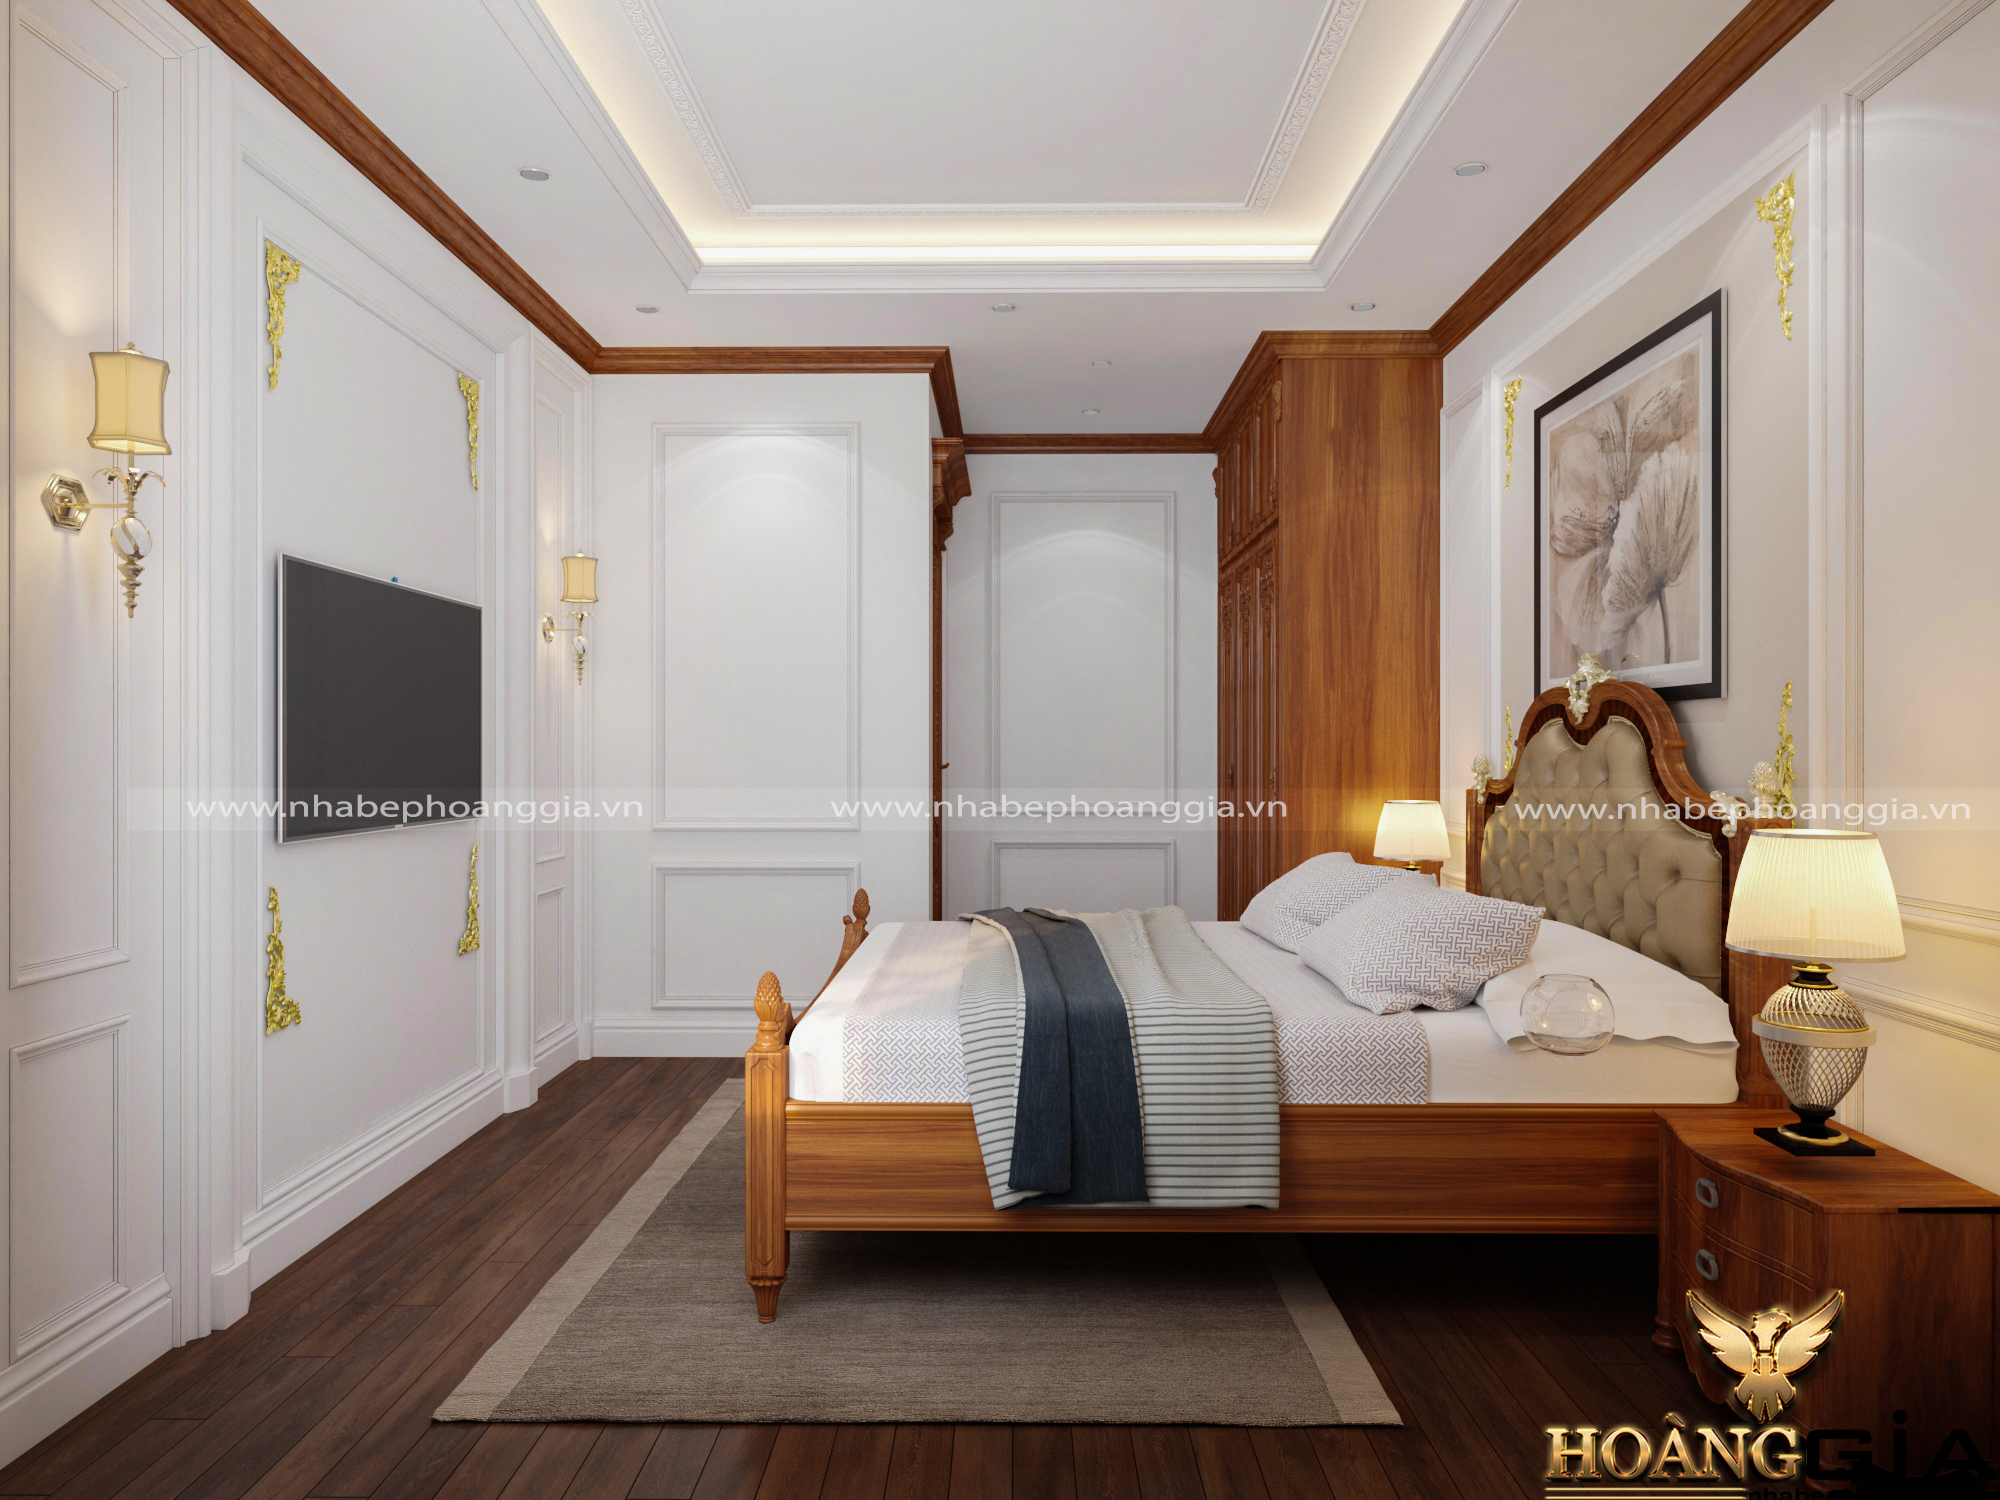 Mẫu thiết kế phòng ngủ tân cổ điển mộc mạc với chất liệu gỗ tự nhiên